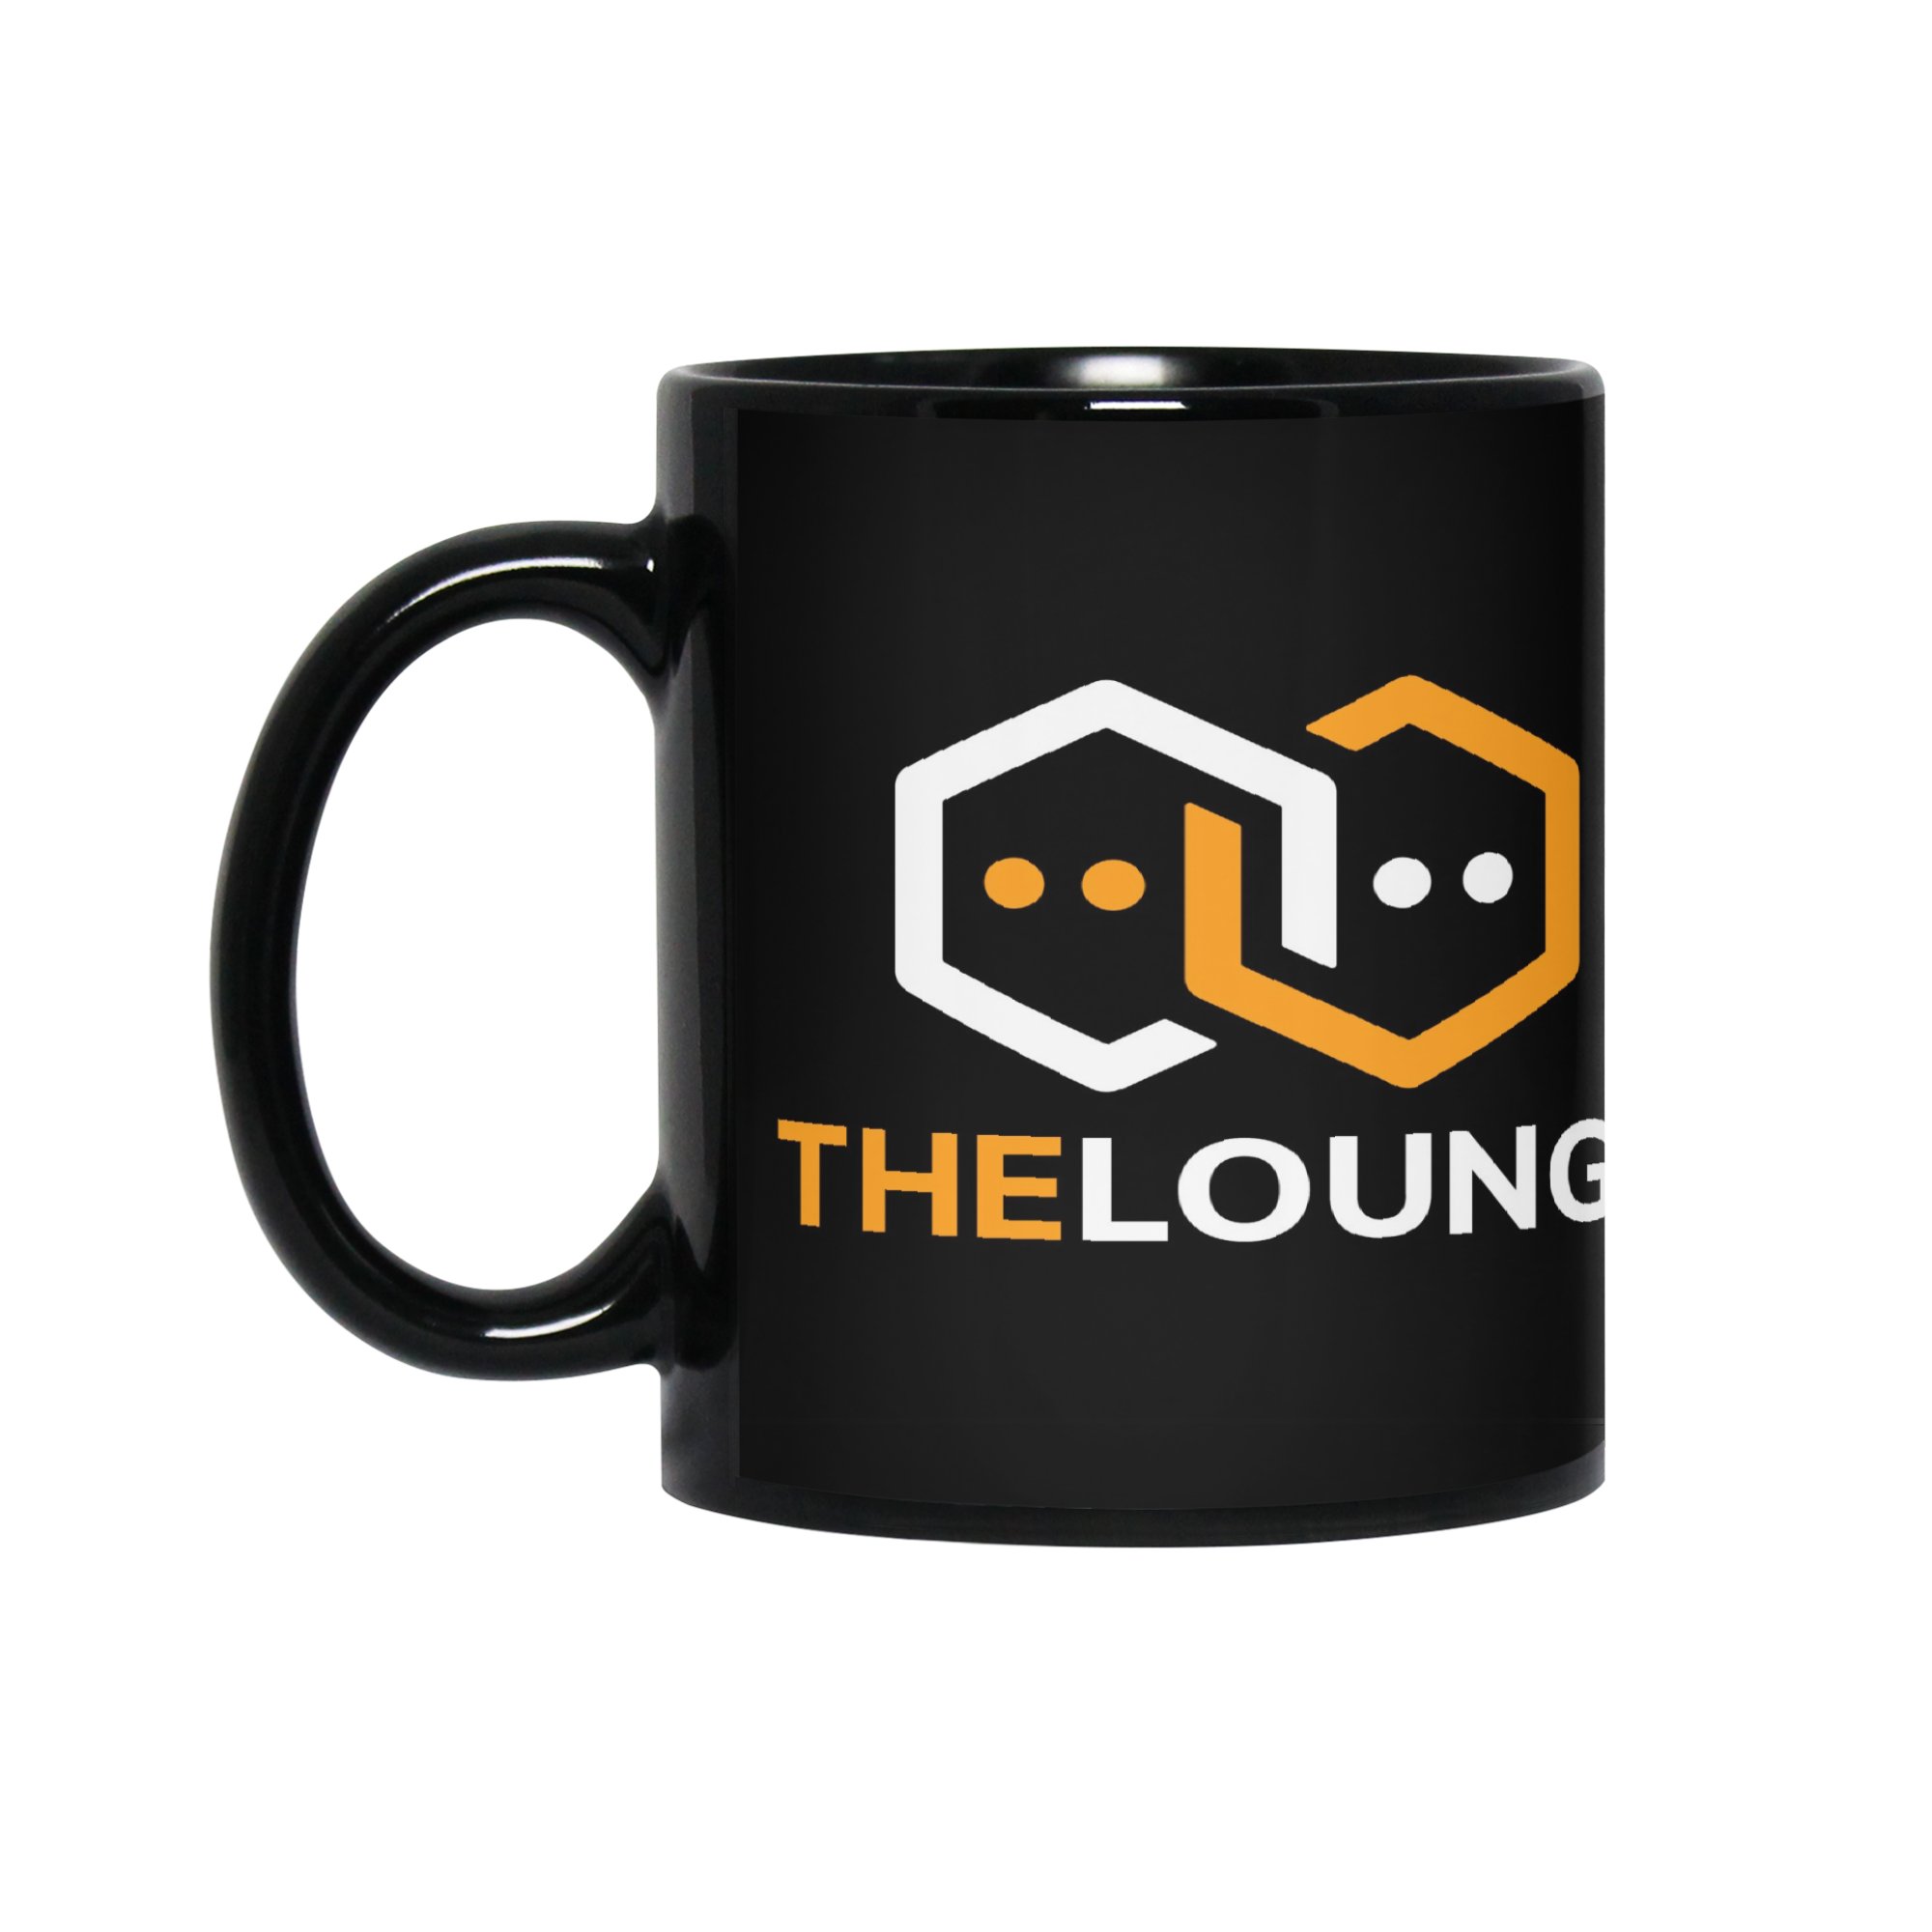 Black mug with inverted The Lounge logo